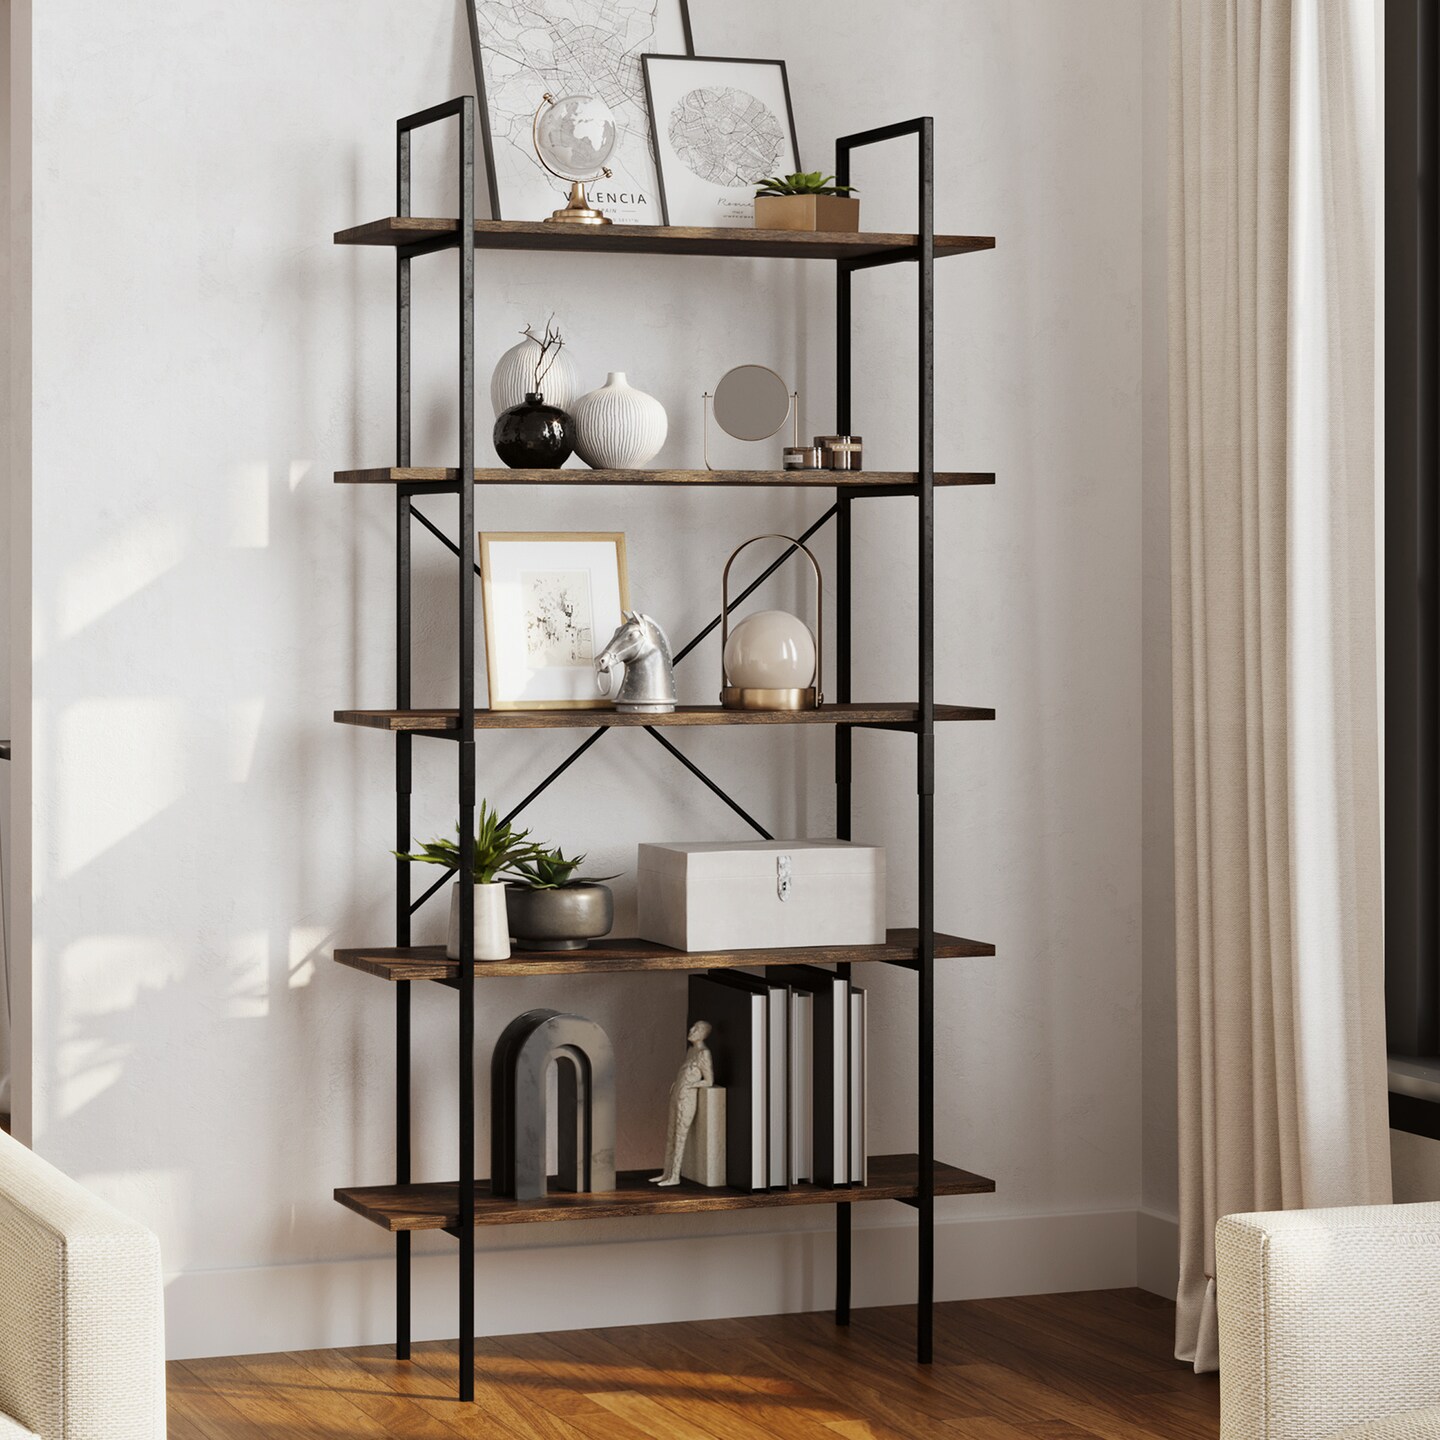 Lavish Home 5 Tier Freestanding Bookshelf Bookcase 5 Wooden Shelves Metal Bars